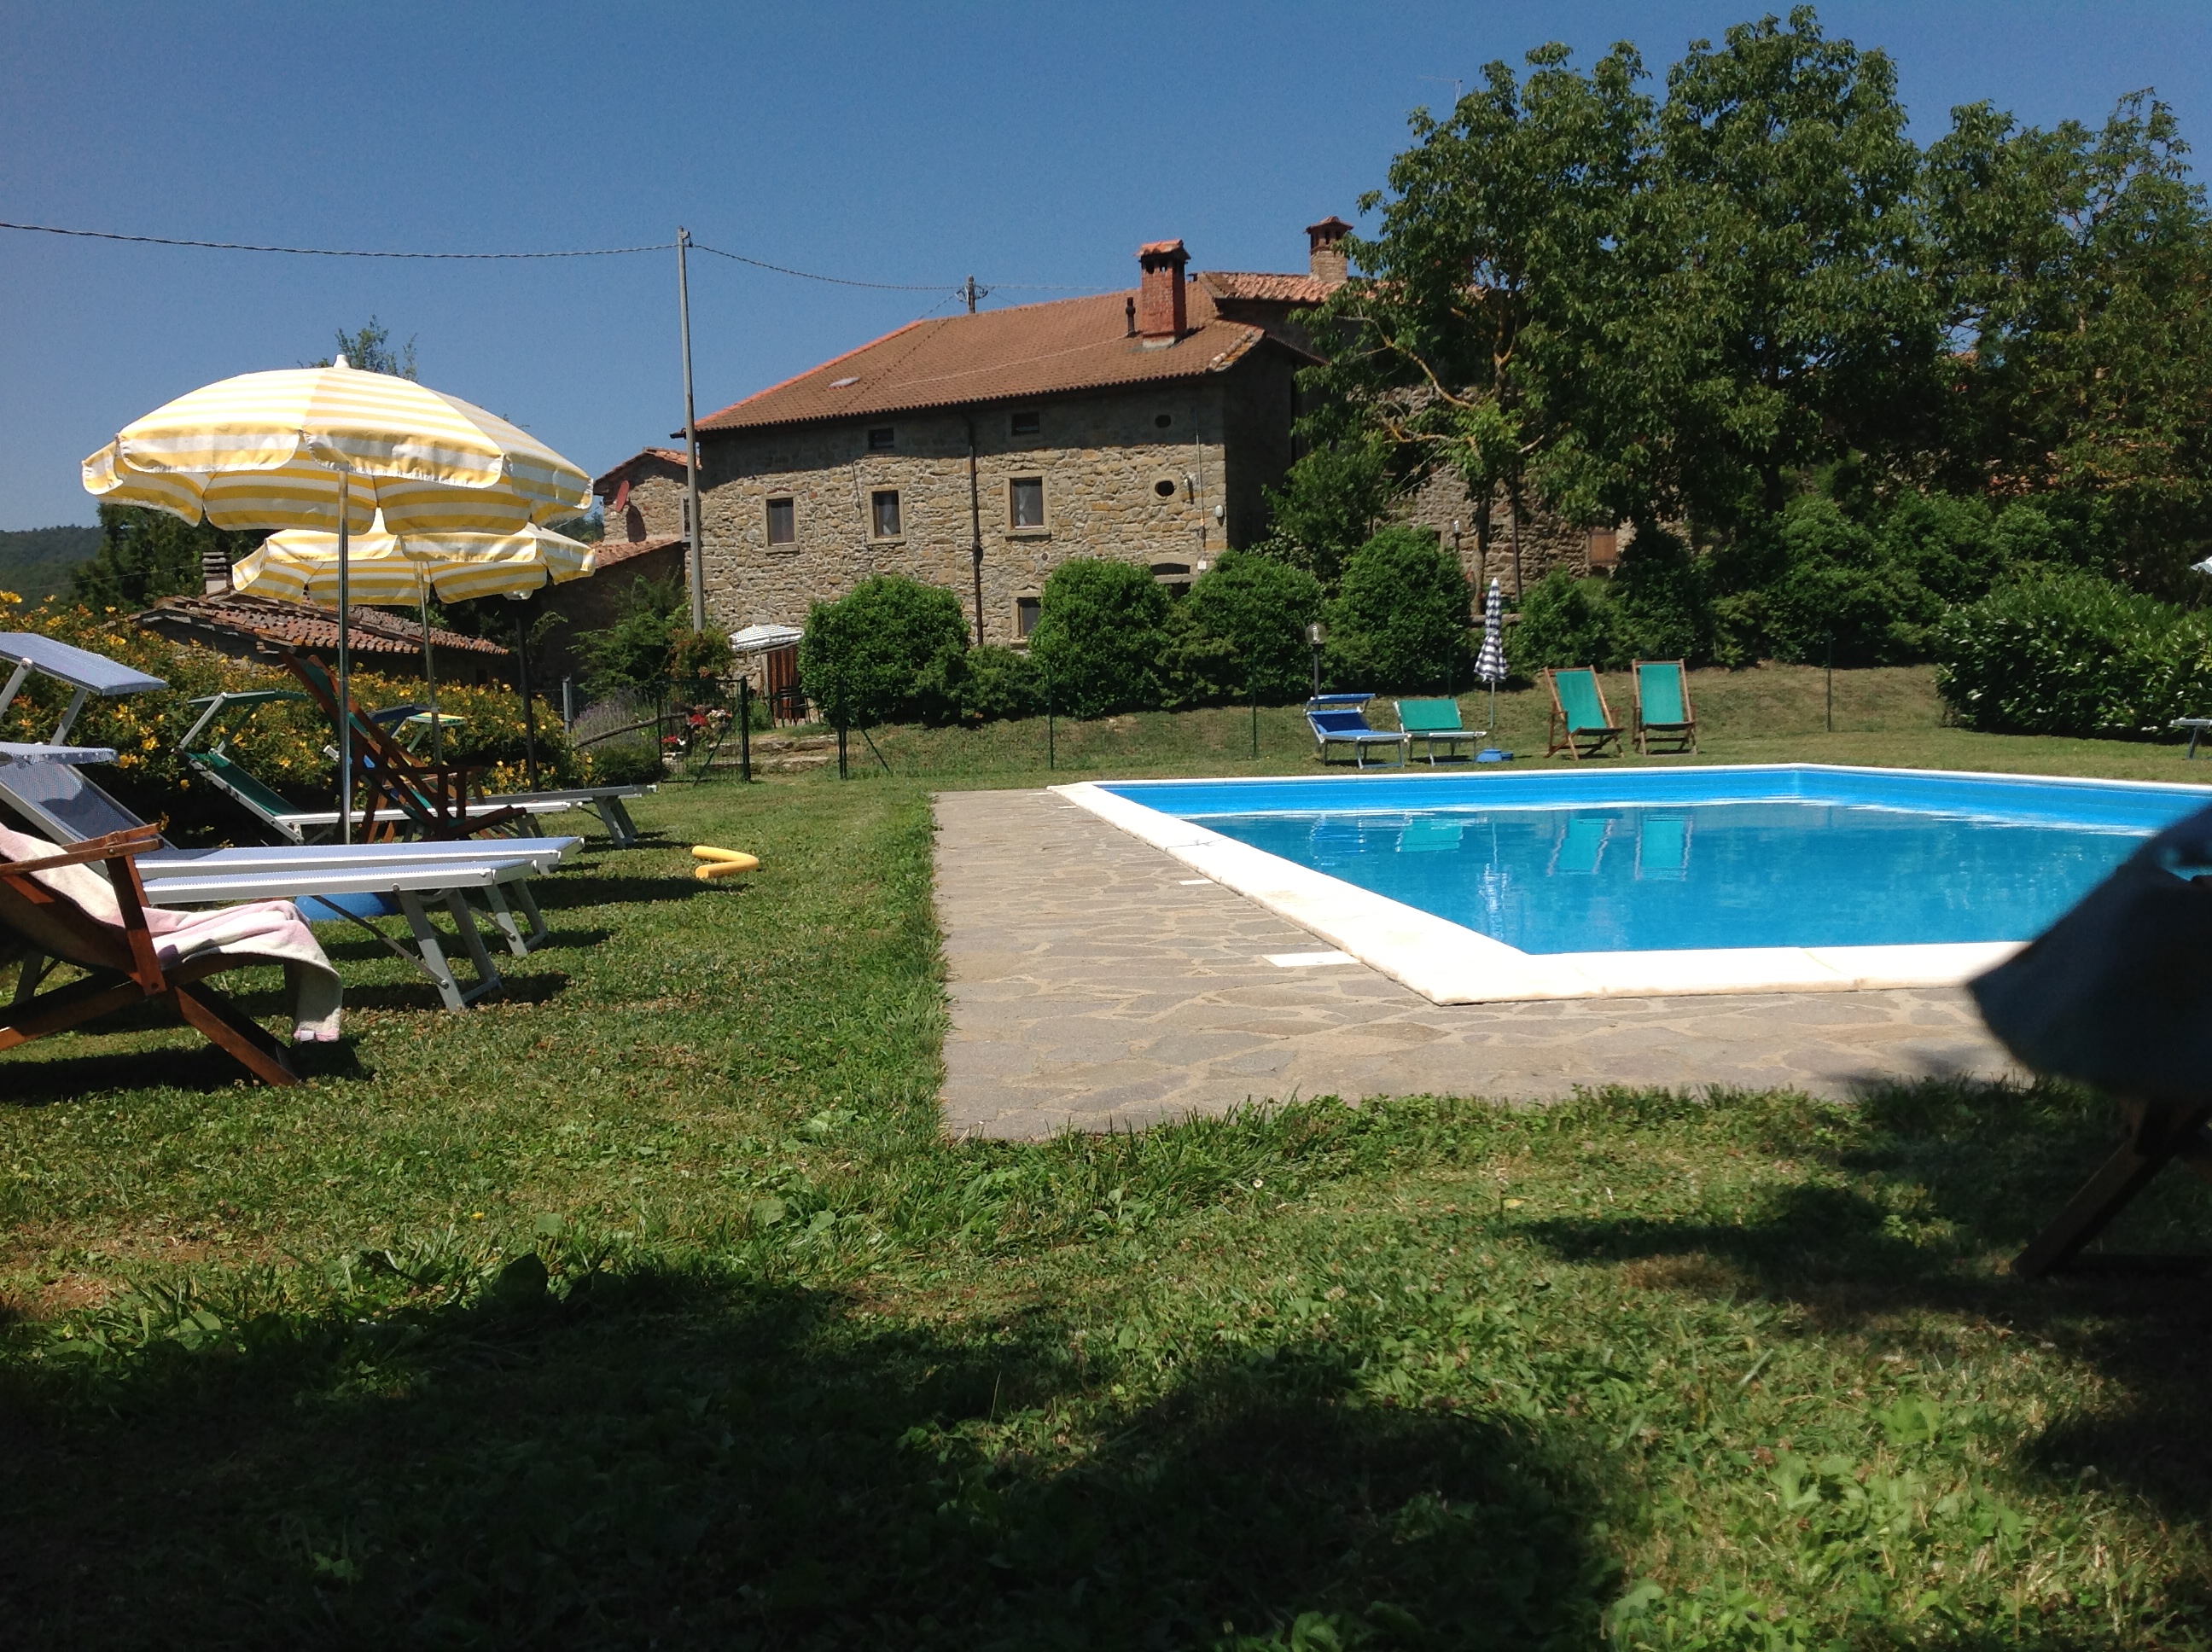 15_Agriturismo, vakantiewoning met zwembad, kleinschalig, il Castelluccio,Toscane, Arezzo, terras, appartementen, ItaliÃ« 1